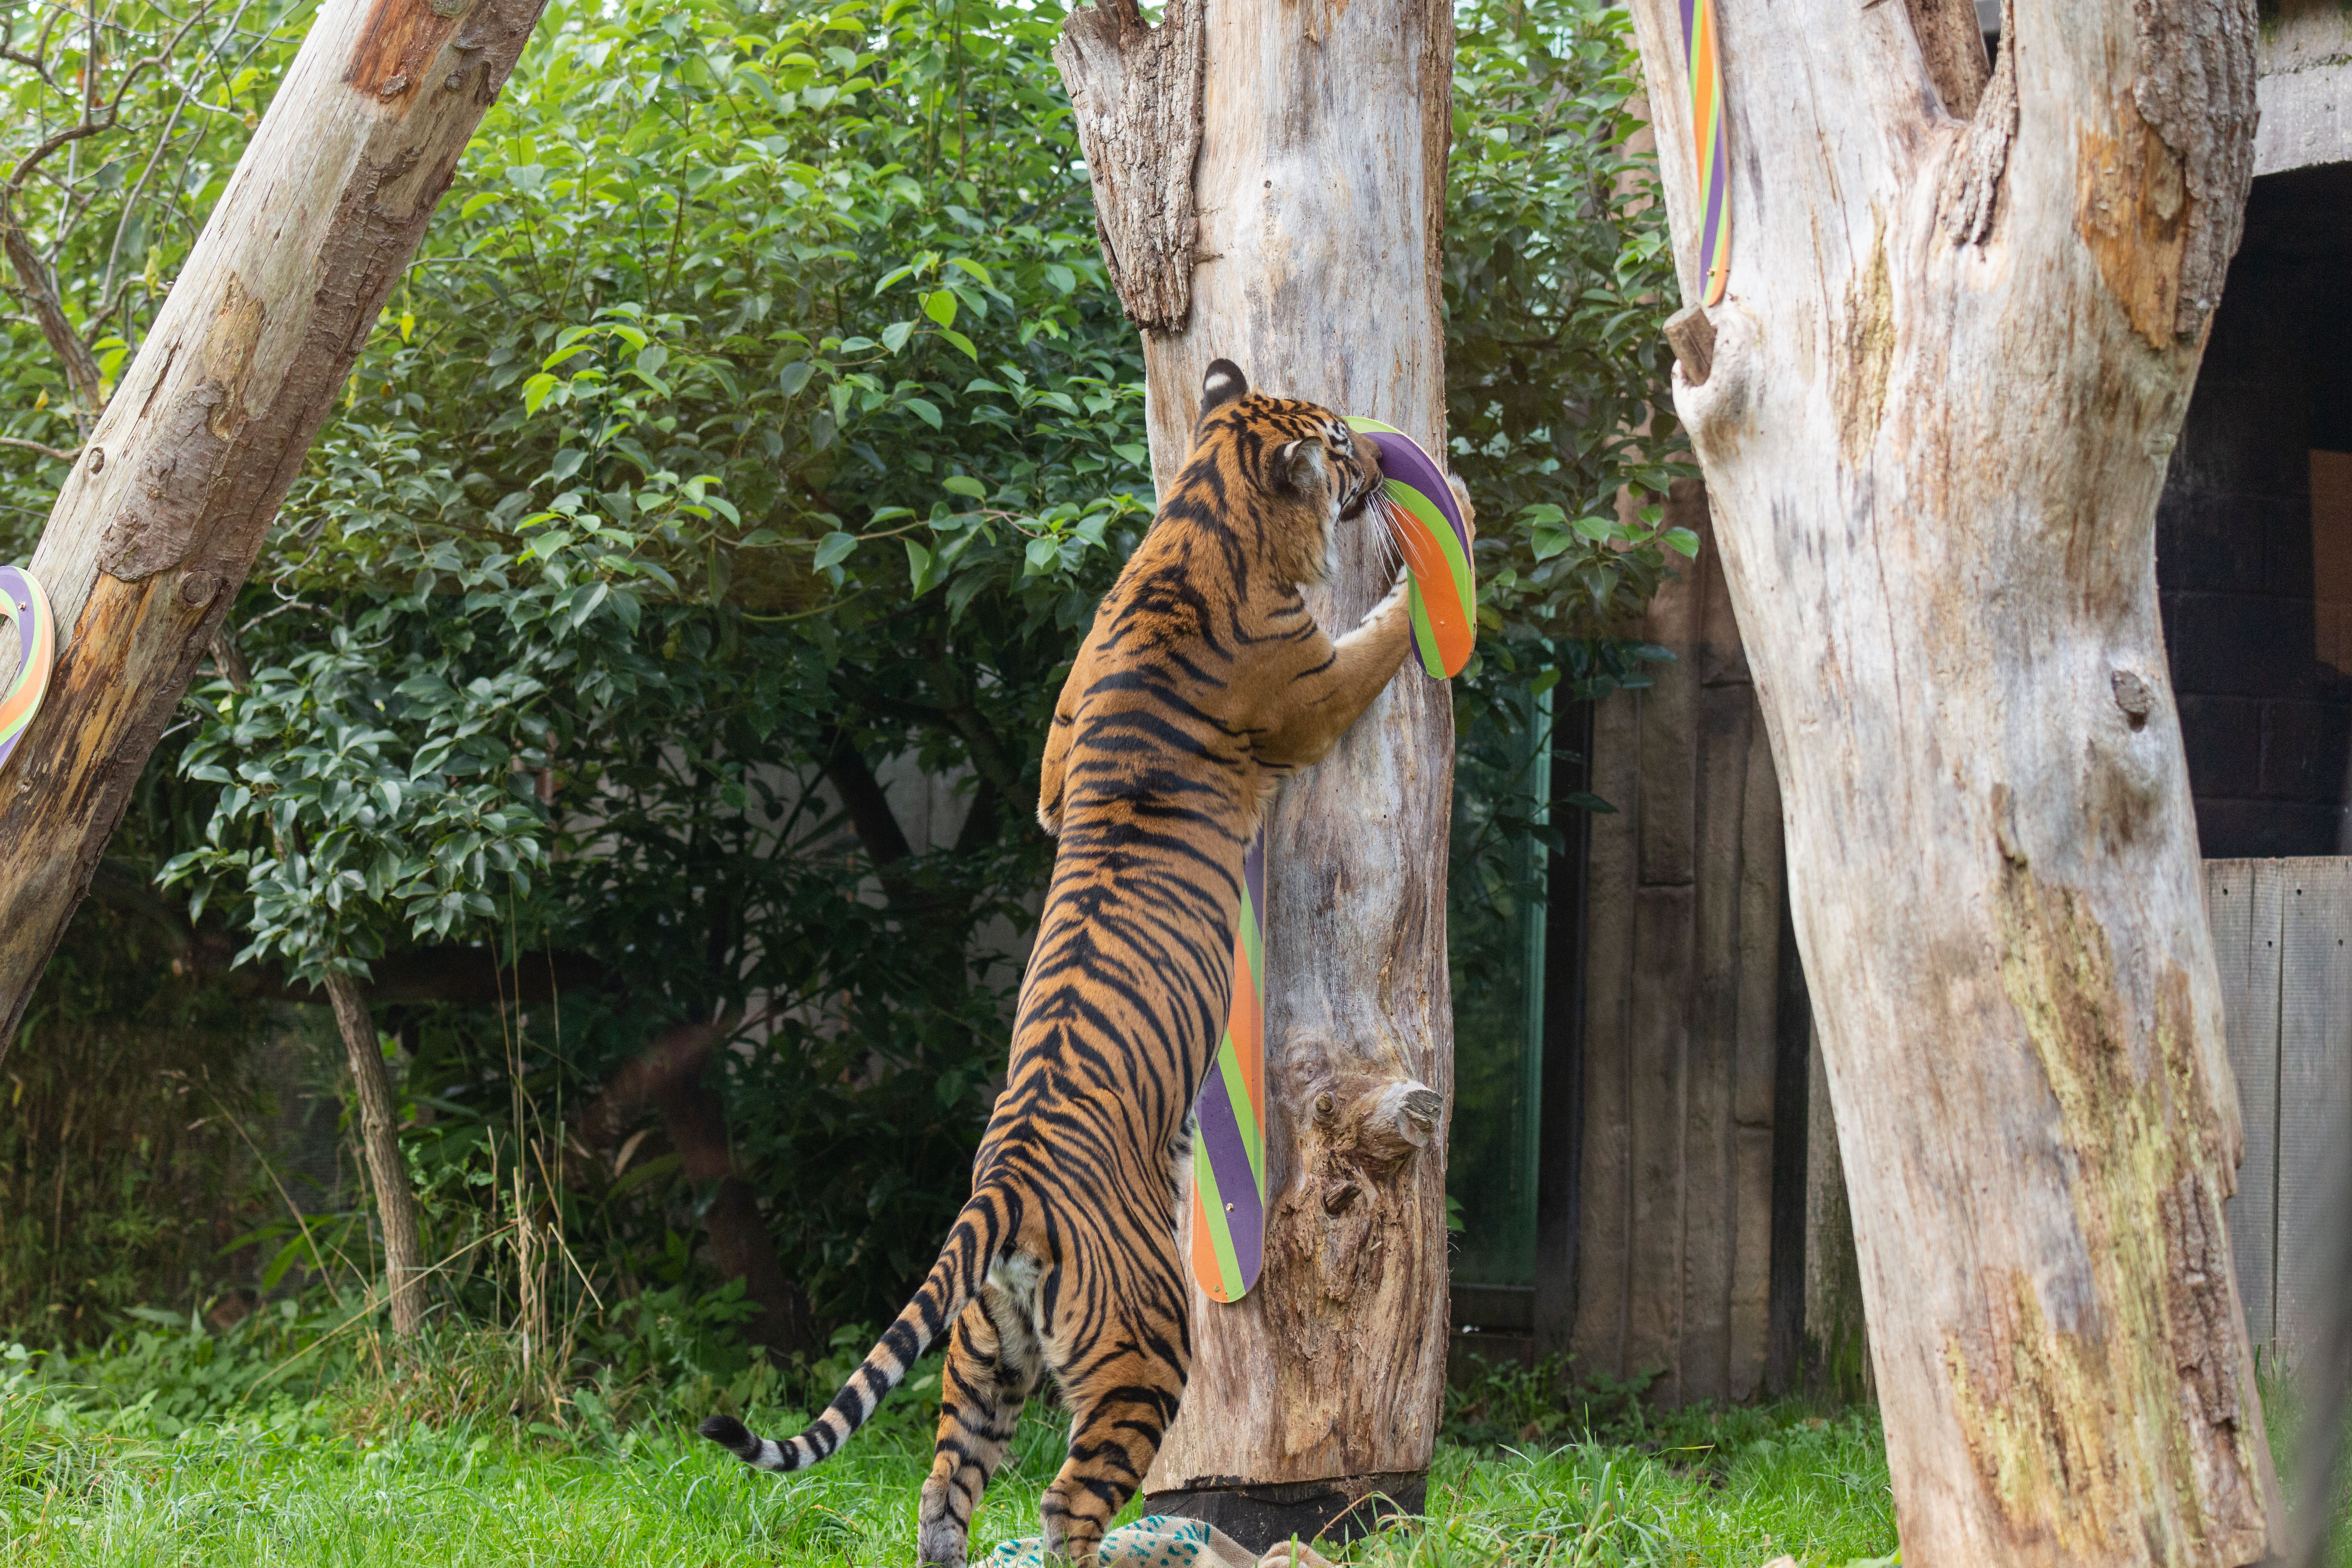 Sumatran tigers at ZSL London Zoo